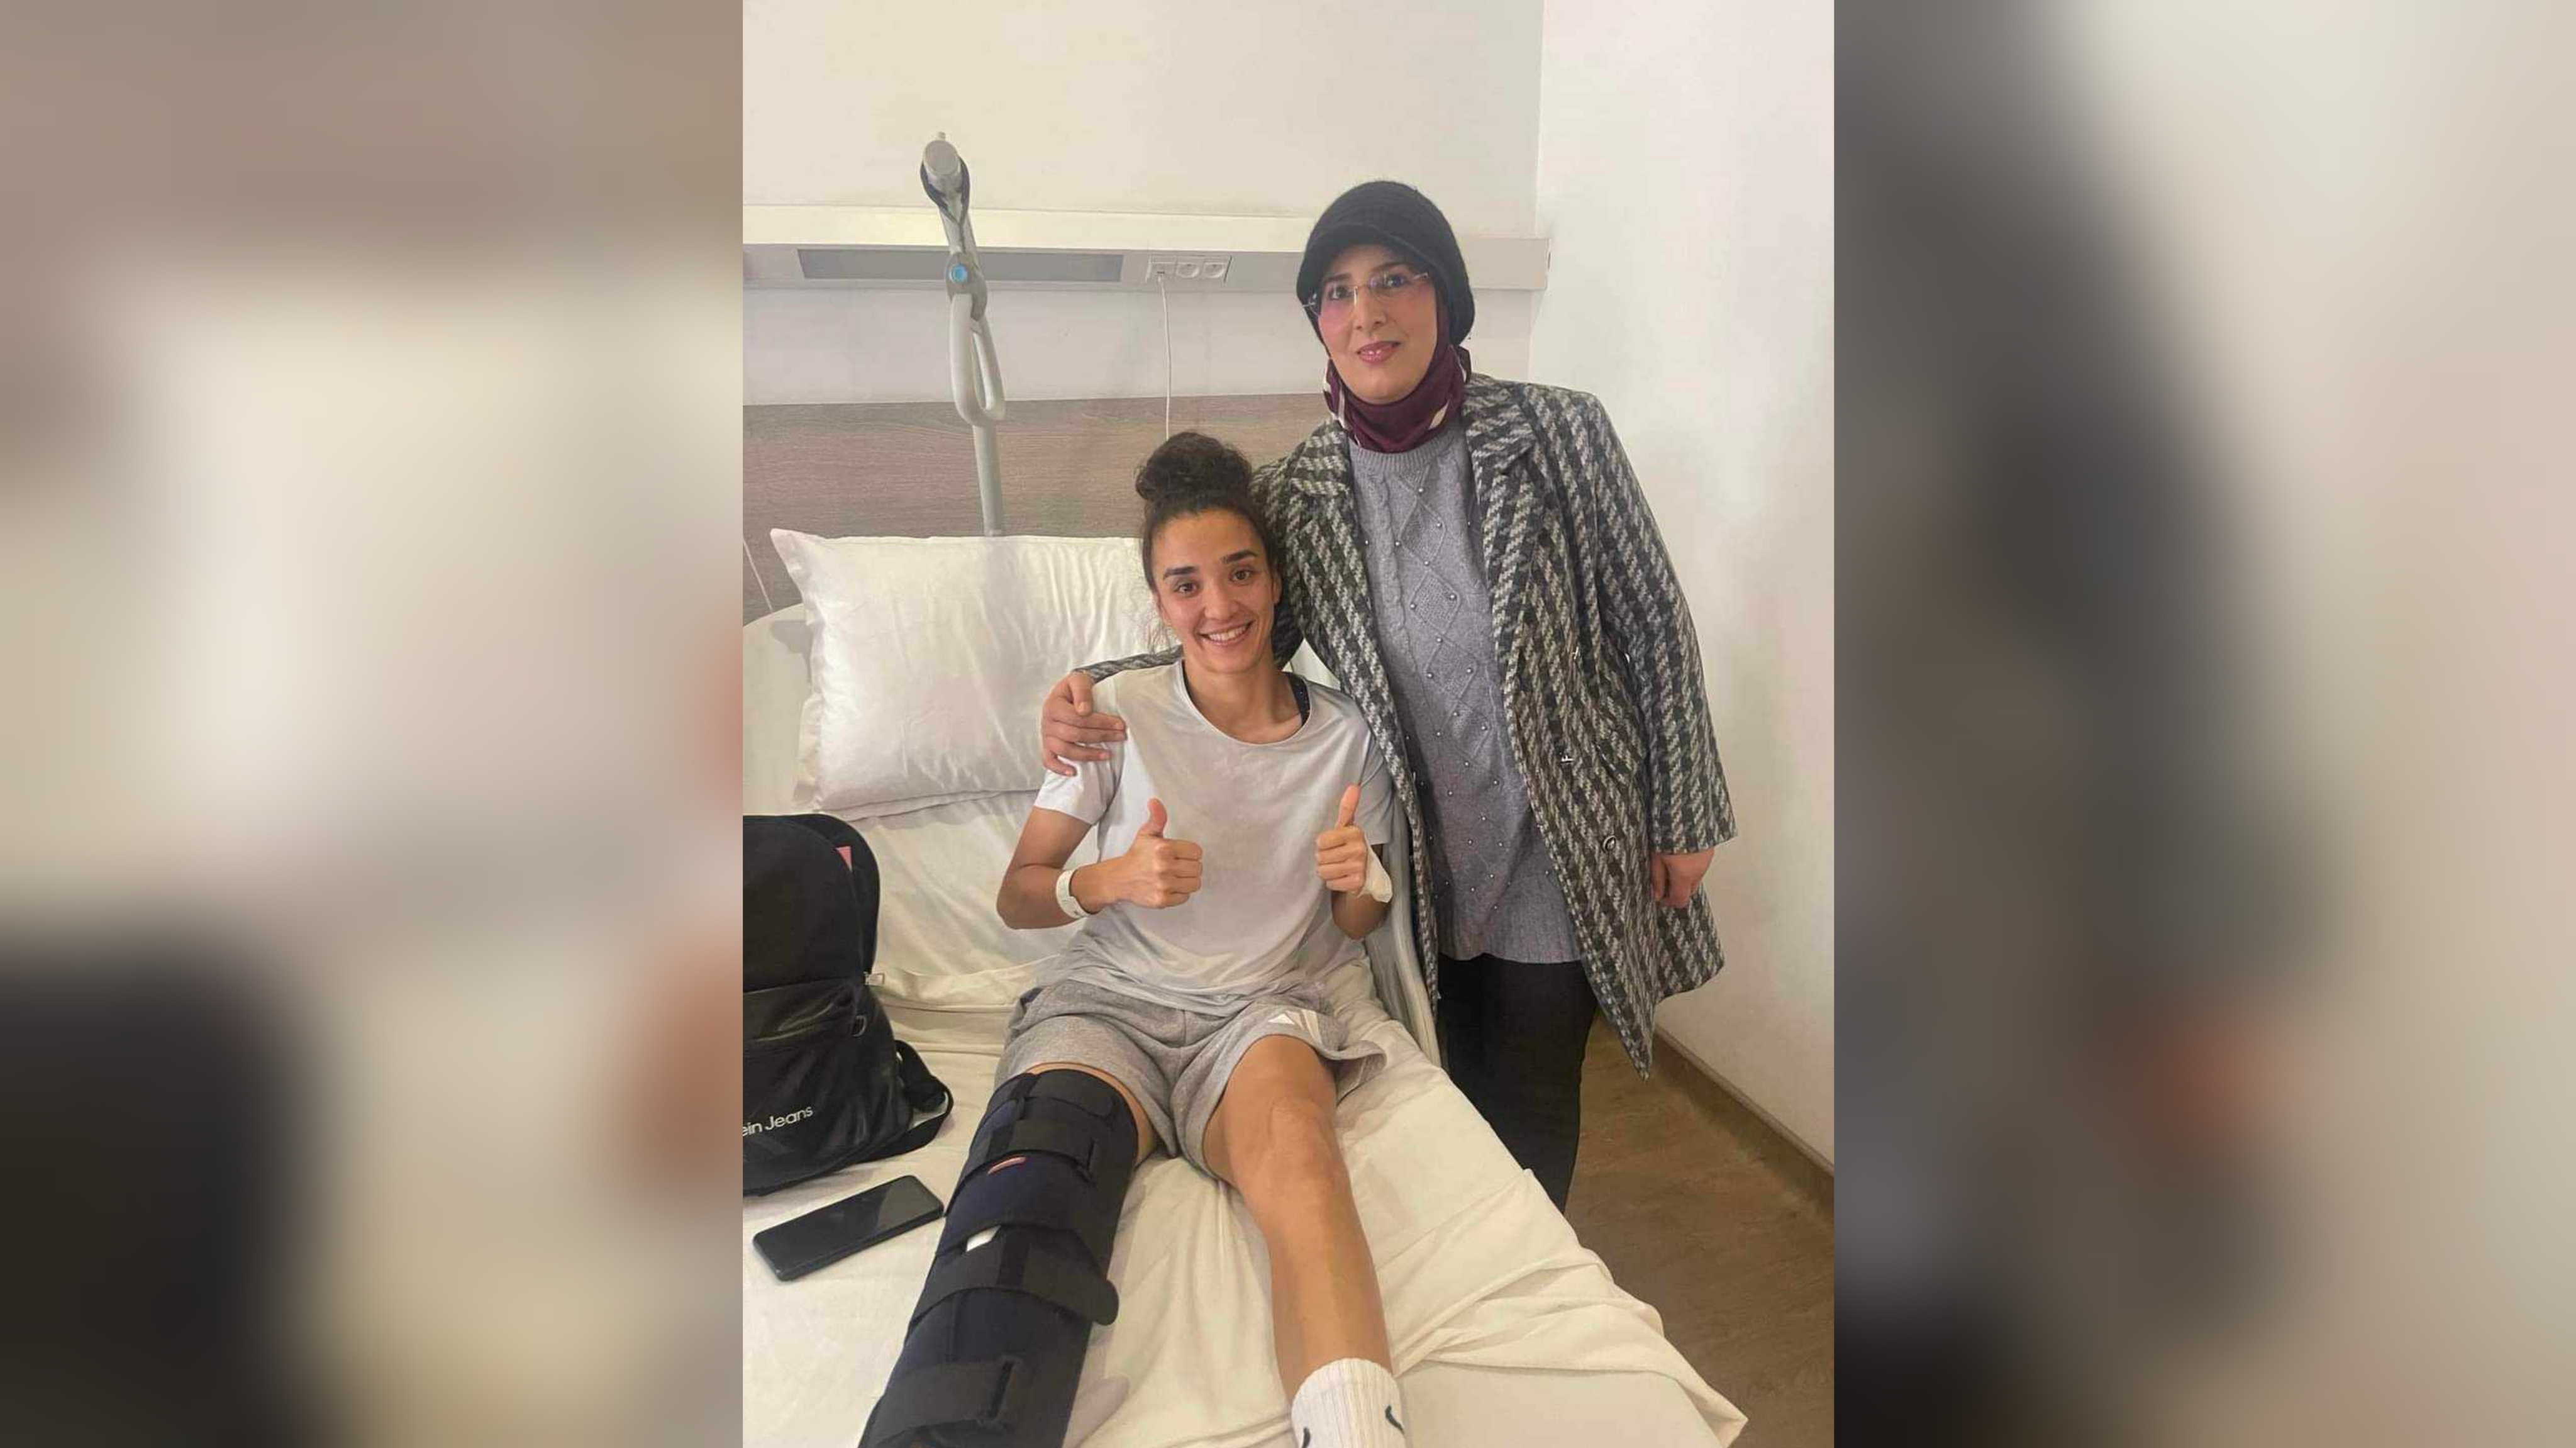 بعد اصابتها في مباراة الكونغو: مريم حويج تخضع لعملية جراحية على مستوى الأربطة المتقاطعة